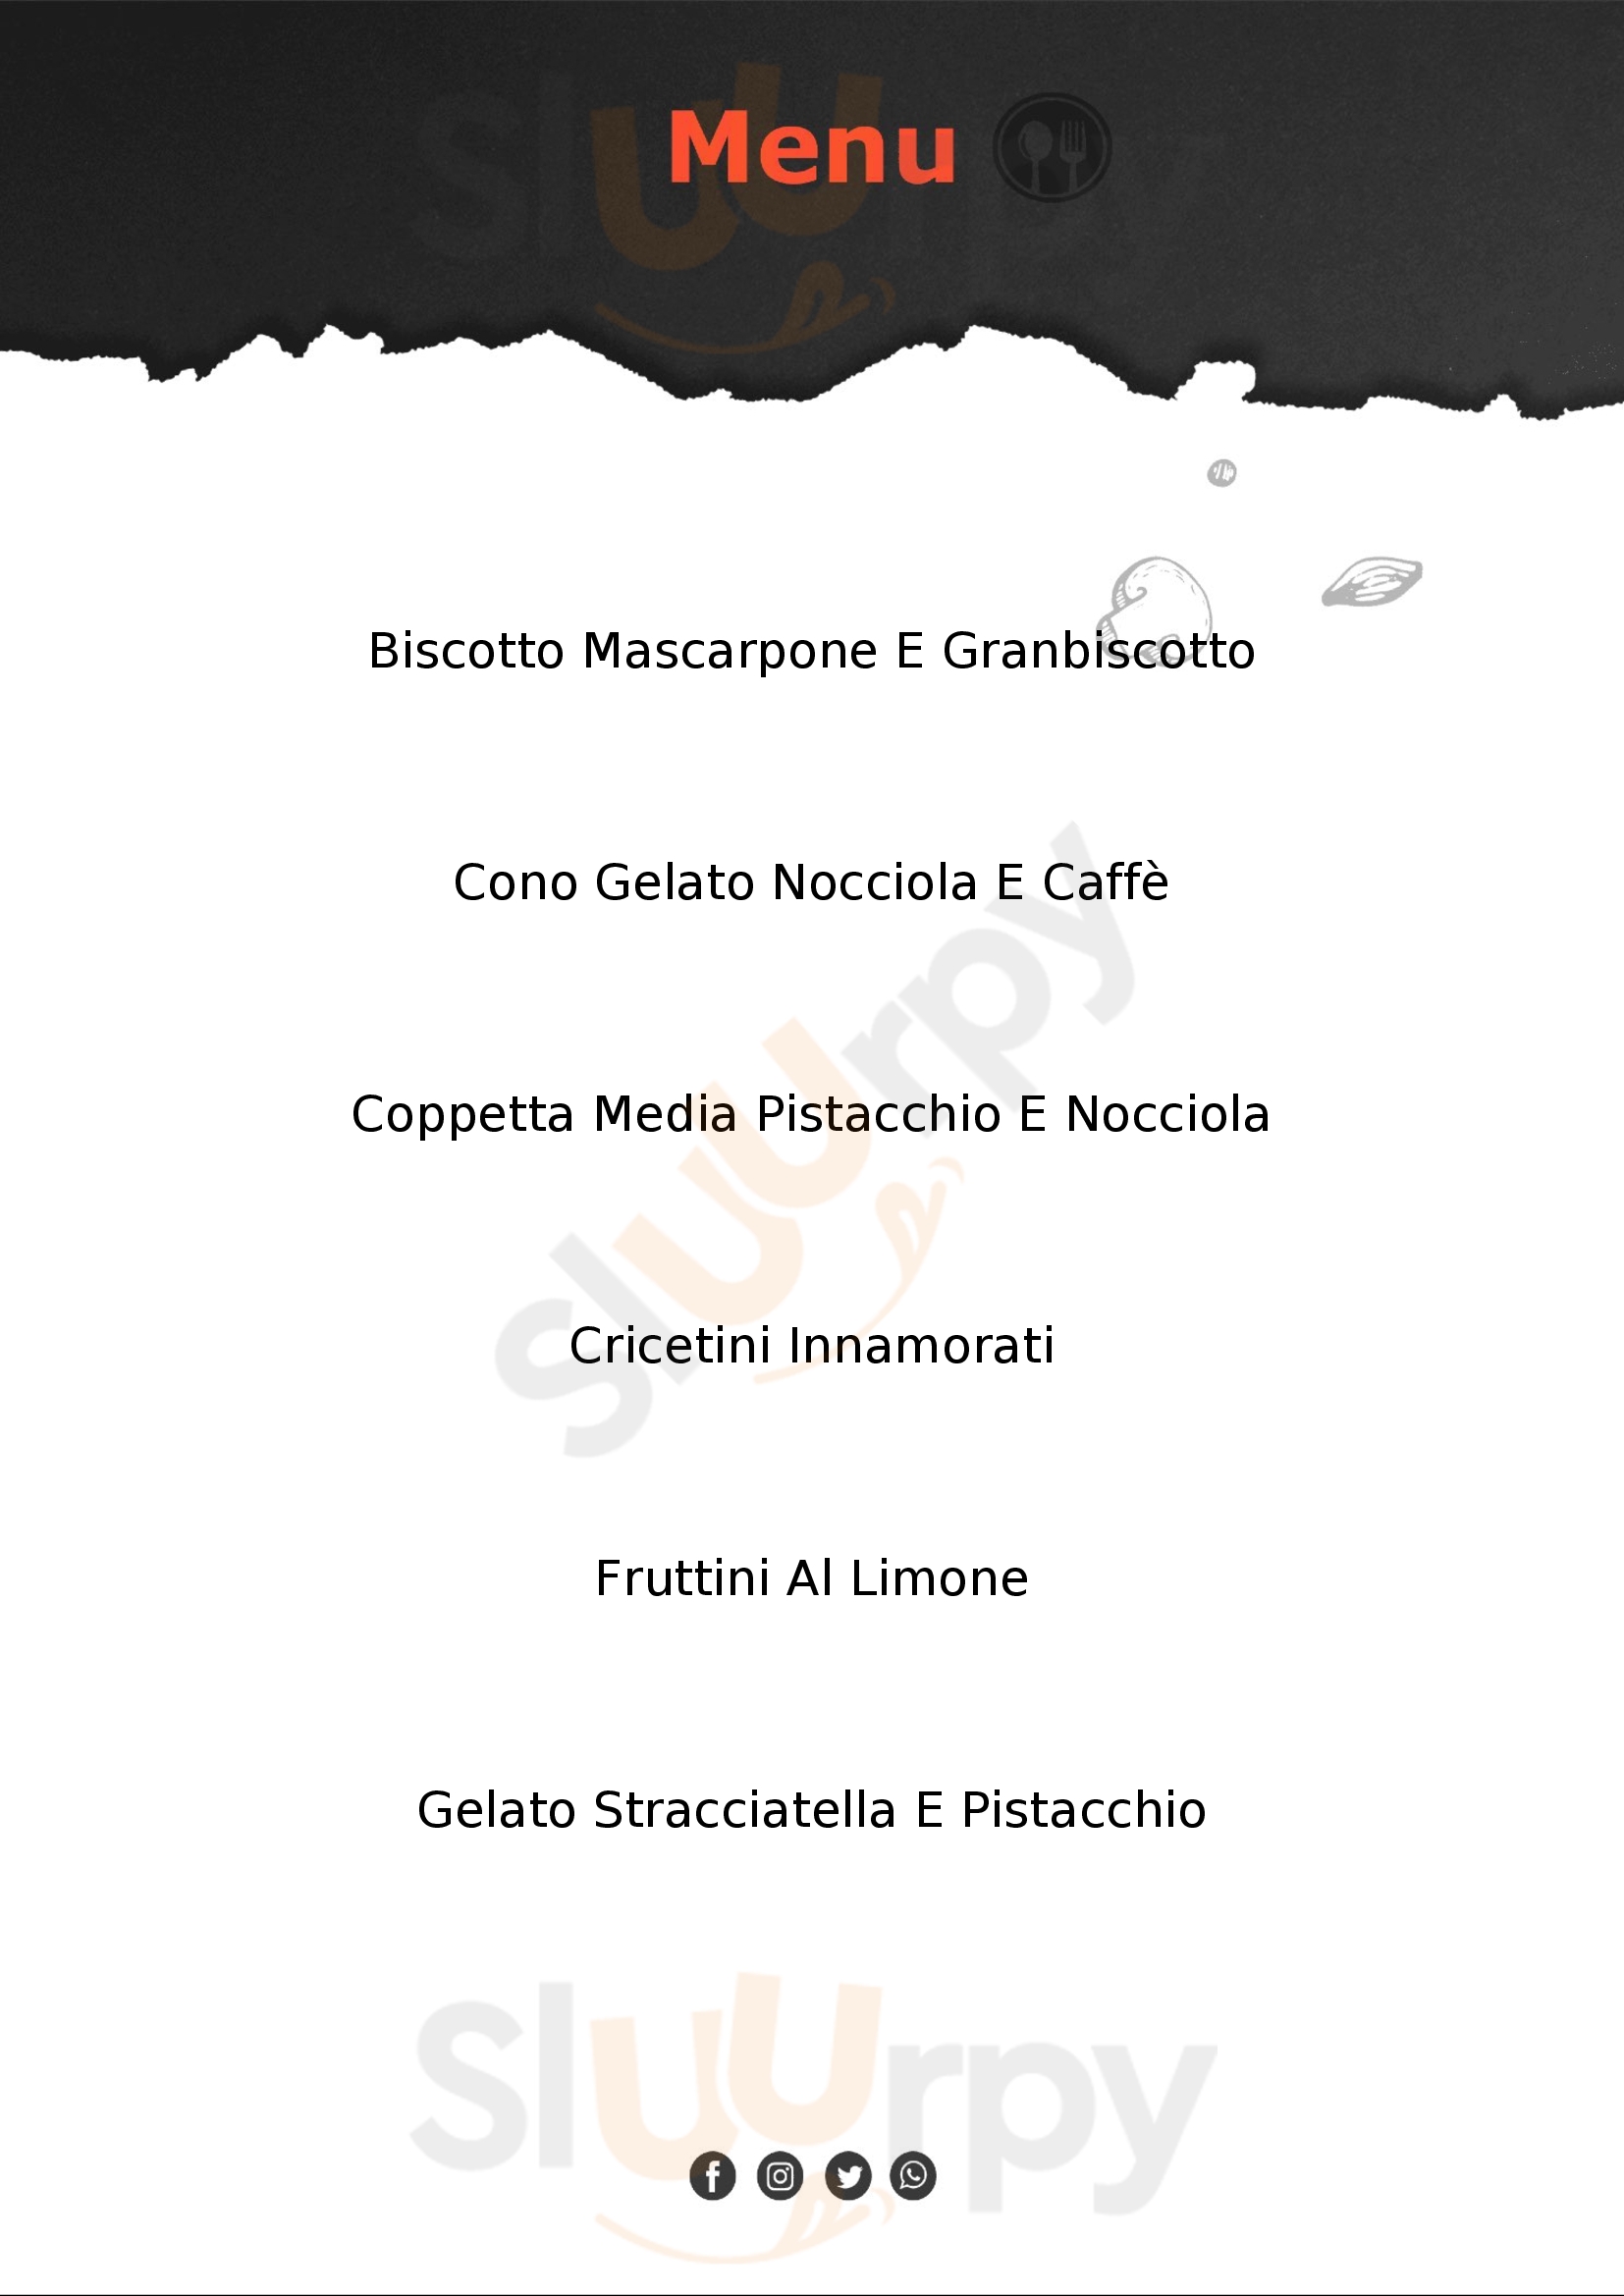 Panna & Cioccolato Riccione menù 1 pagina